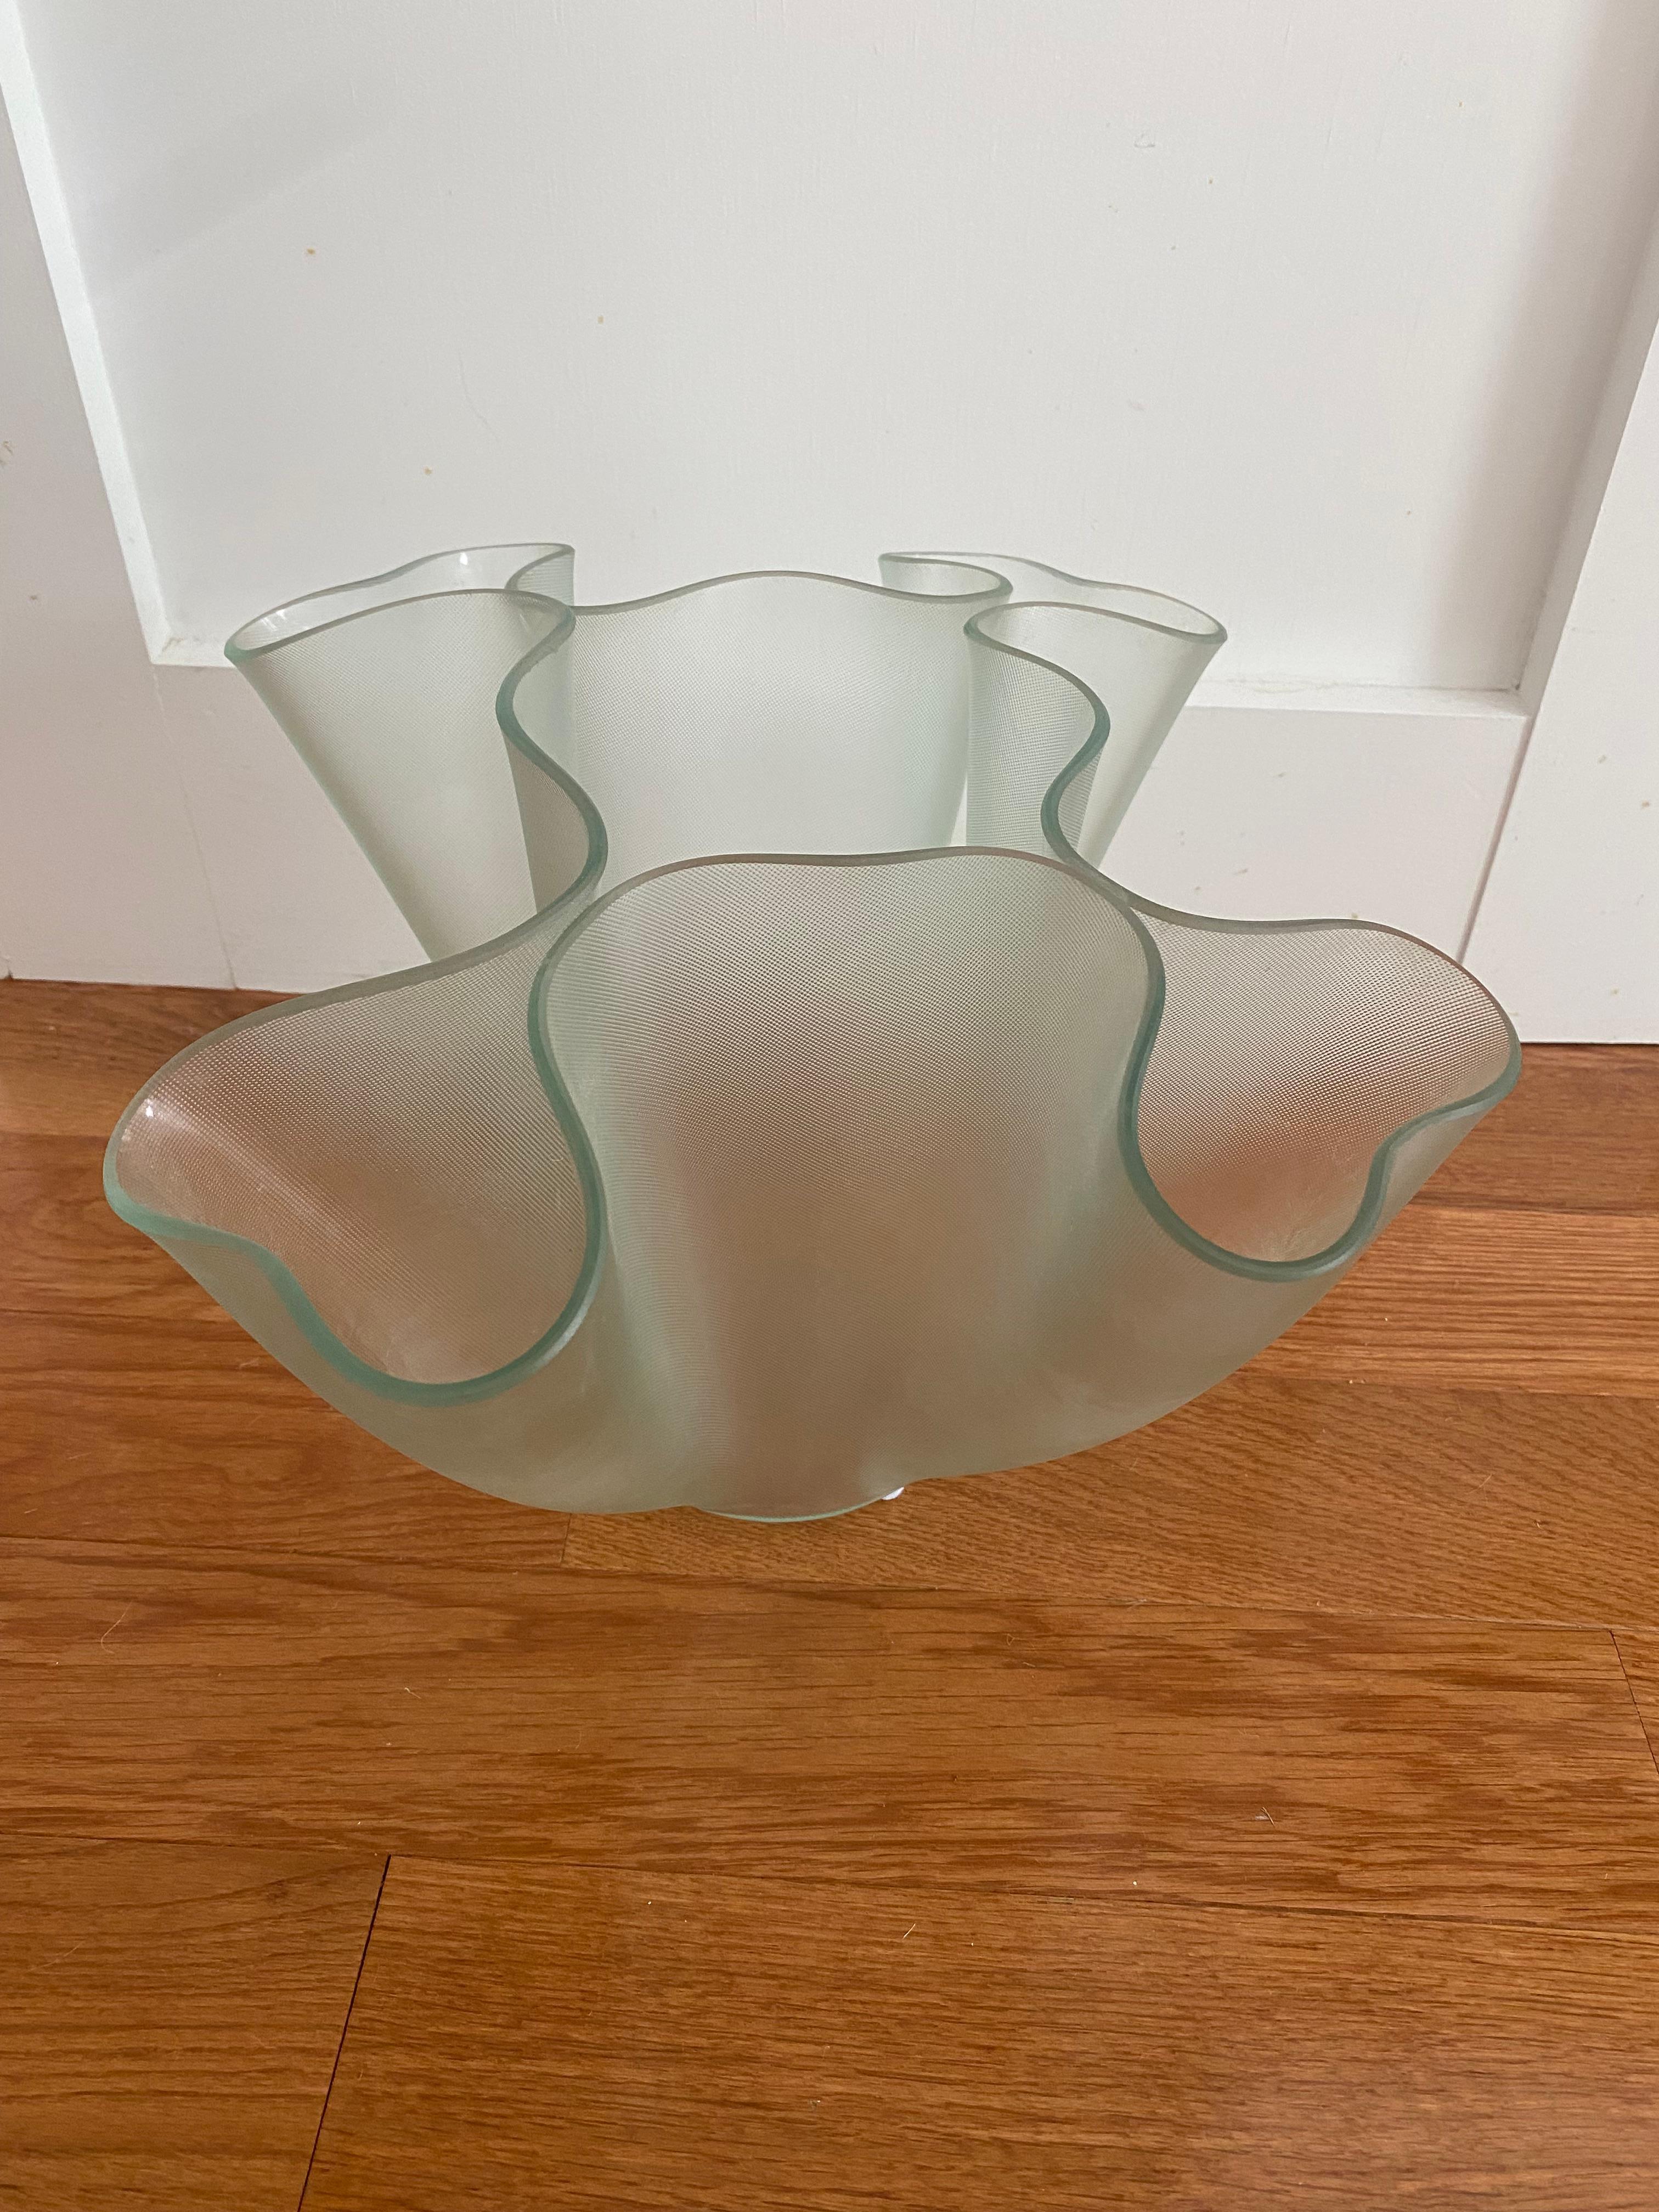 Vase en verre texturé de forme libre conçu dans les années 1940 et produit depuis.
La forme iconique de Fontana Arte permet de réaliser facilement des arrangements floraux.
environ 13 x 13 x 9 pouces de hauteur